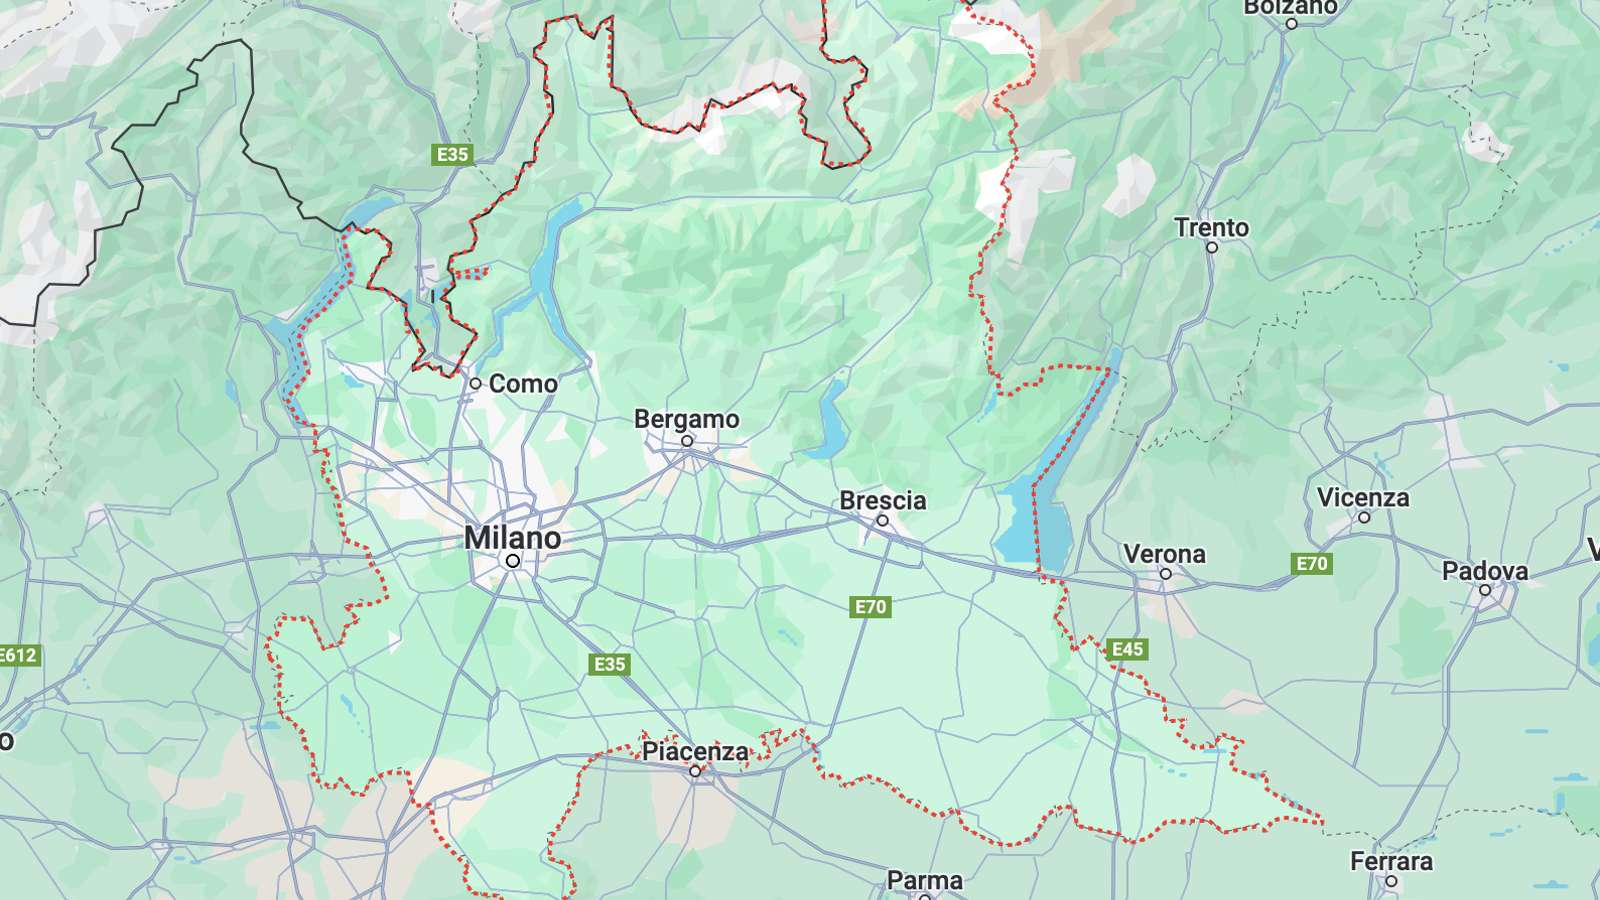 Mappa Lombardia cartina geografica